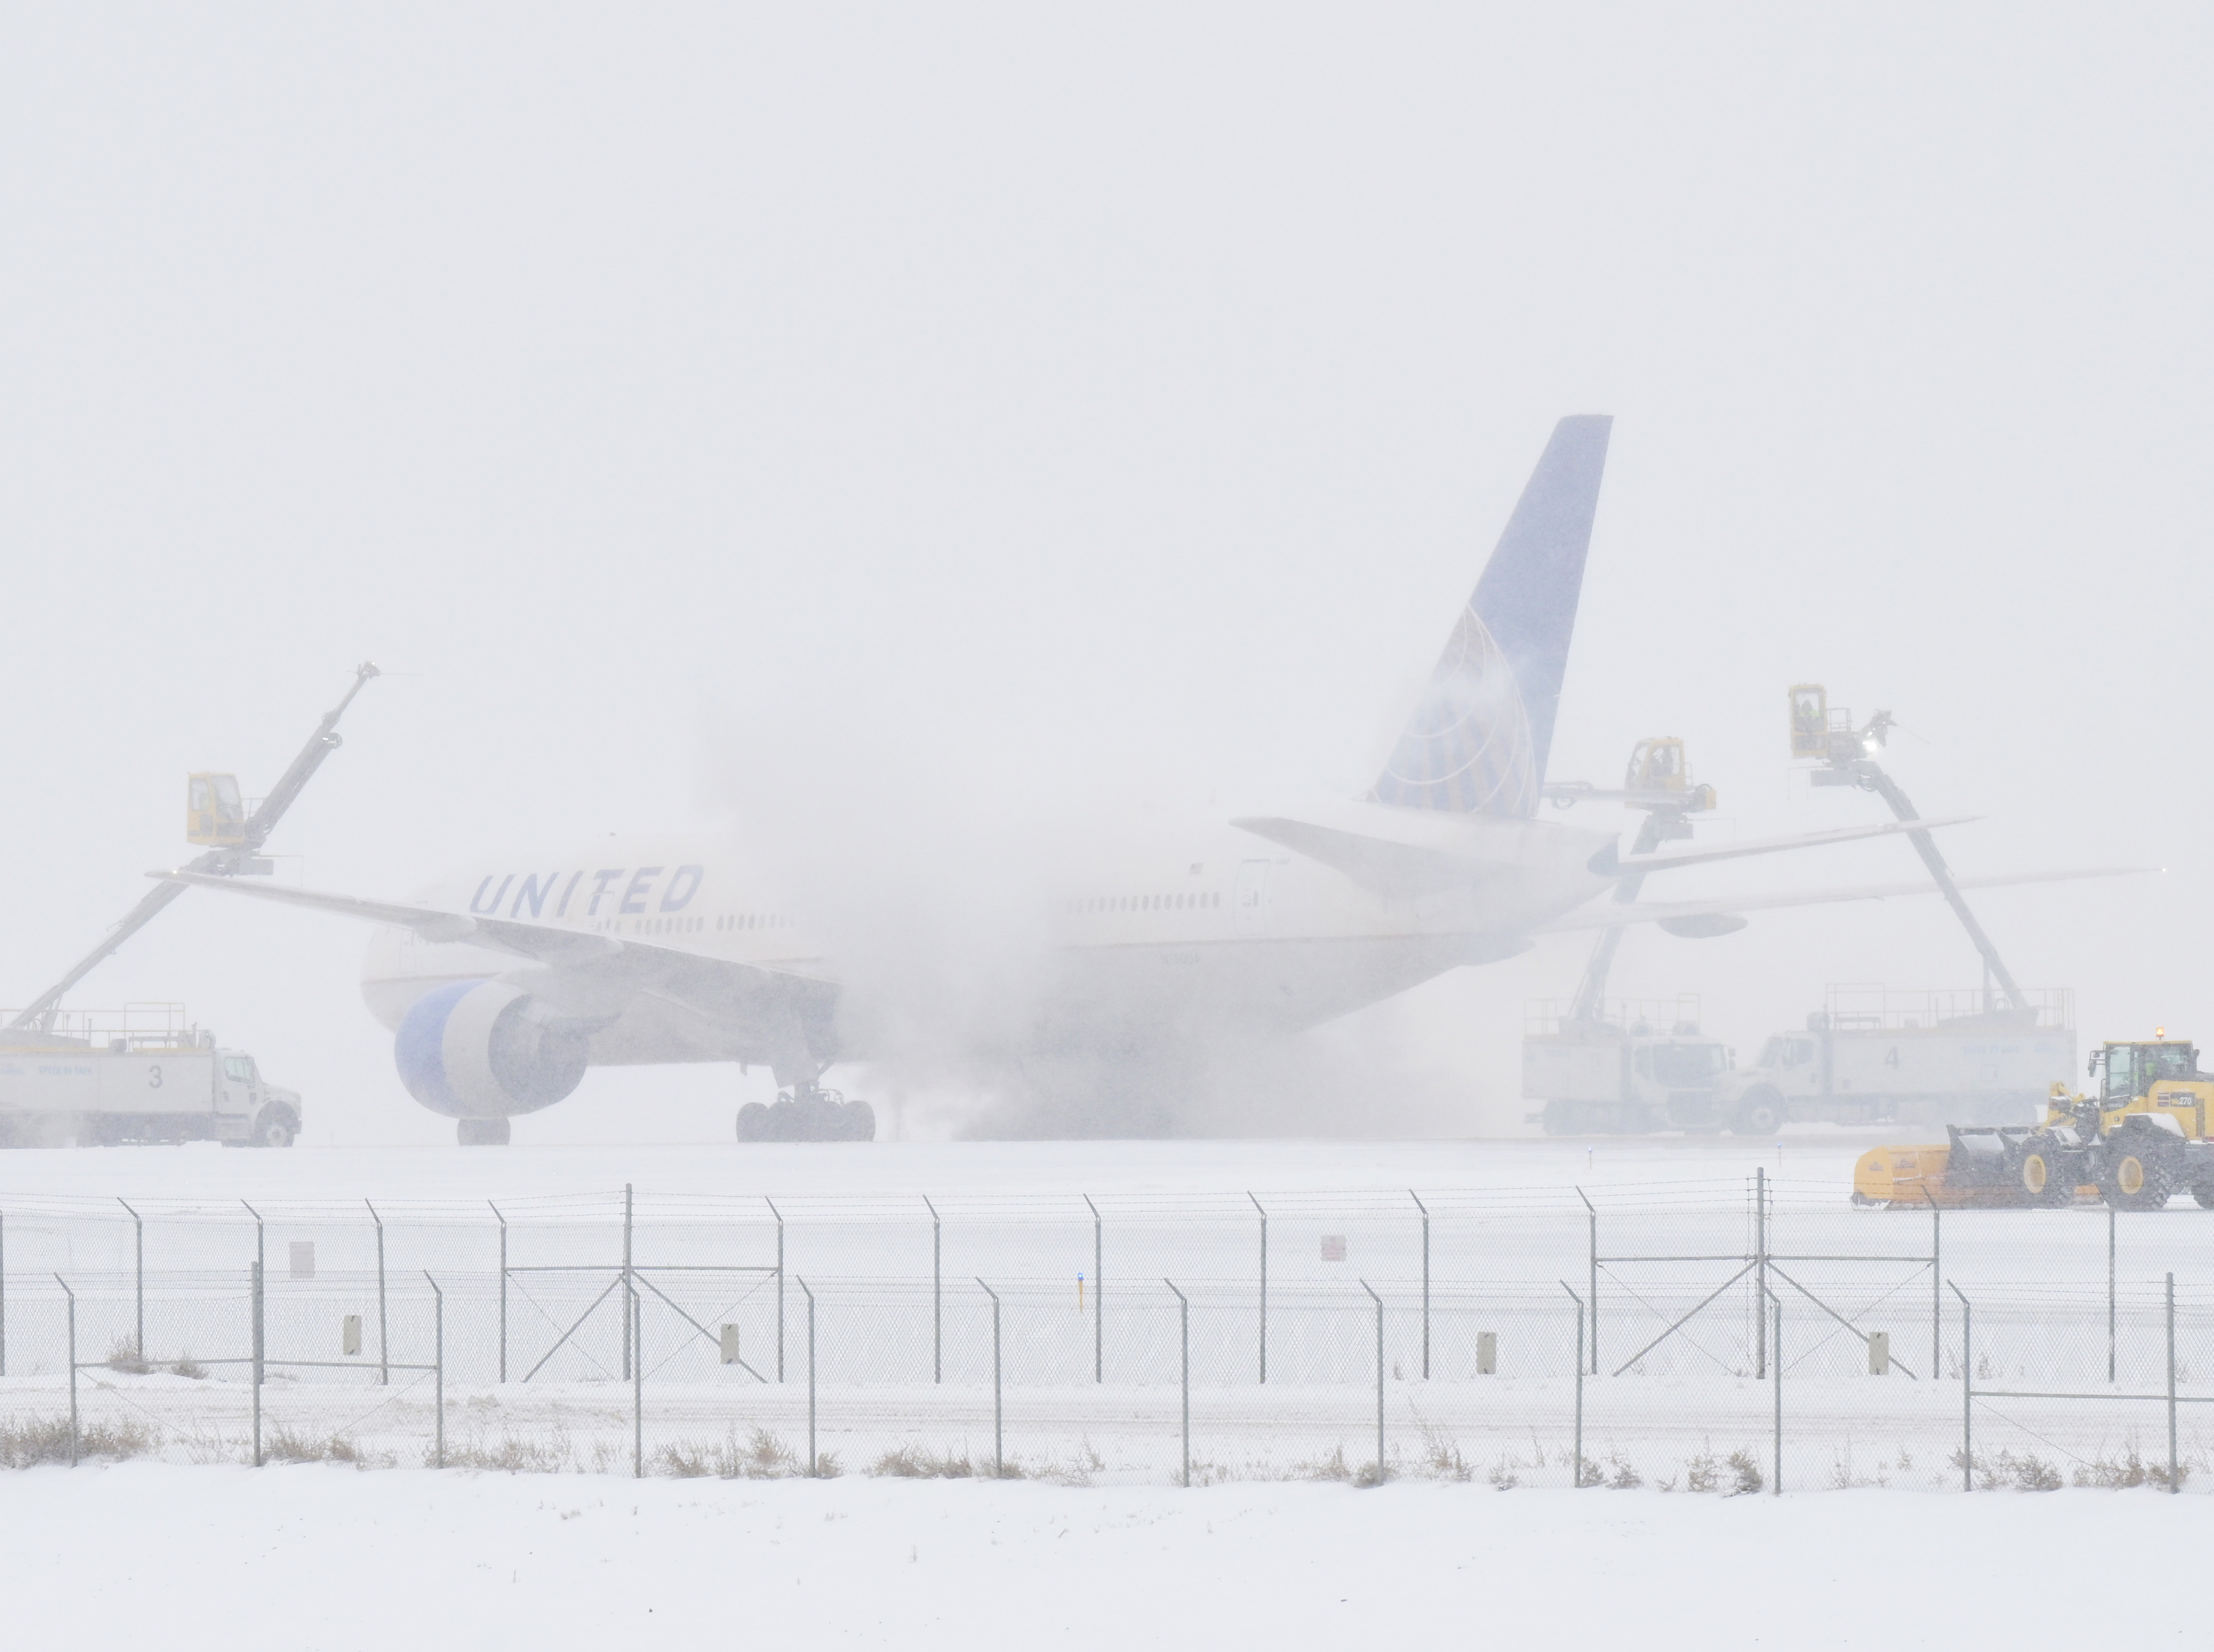 More than 1,000 flights delayed, canceled at Denver International ...